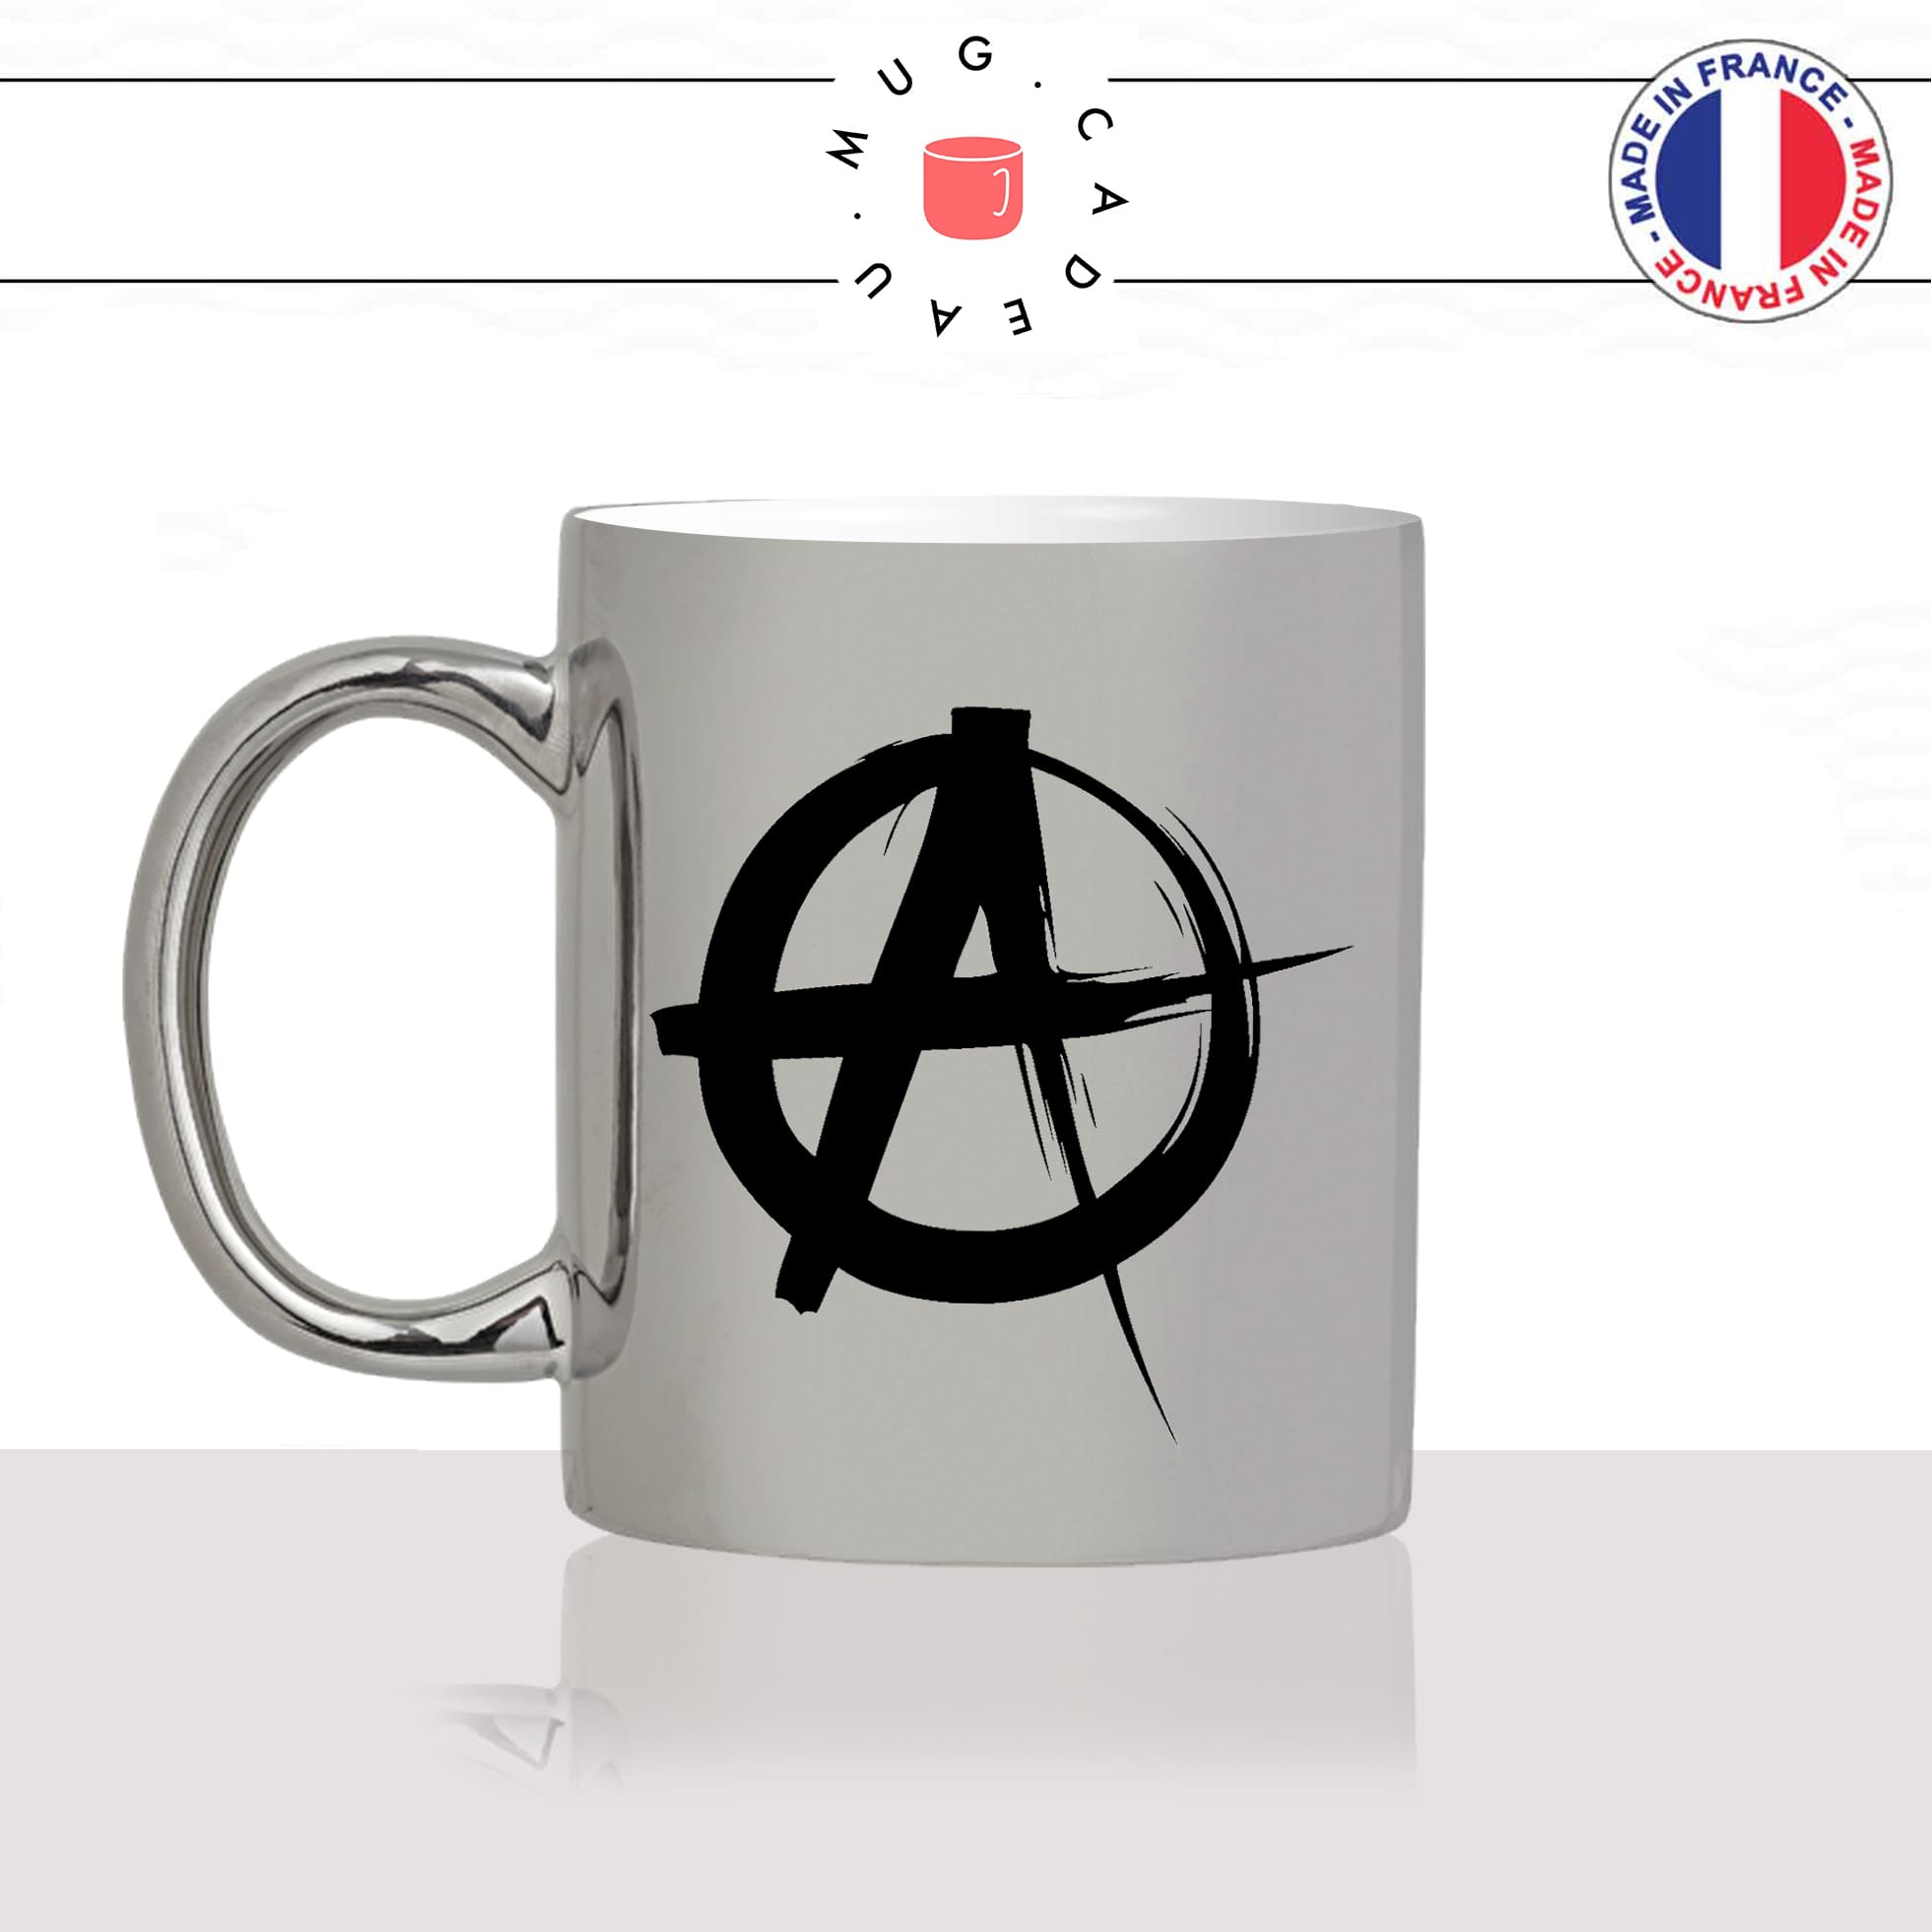 mug-argent-gris-argenté-tasse-idée-cadeau-personnalisé-anarchiste-anarchy-anarchie-politique-black-blocks-anti-fa-societé-fun-drole-offrir-original